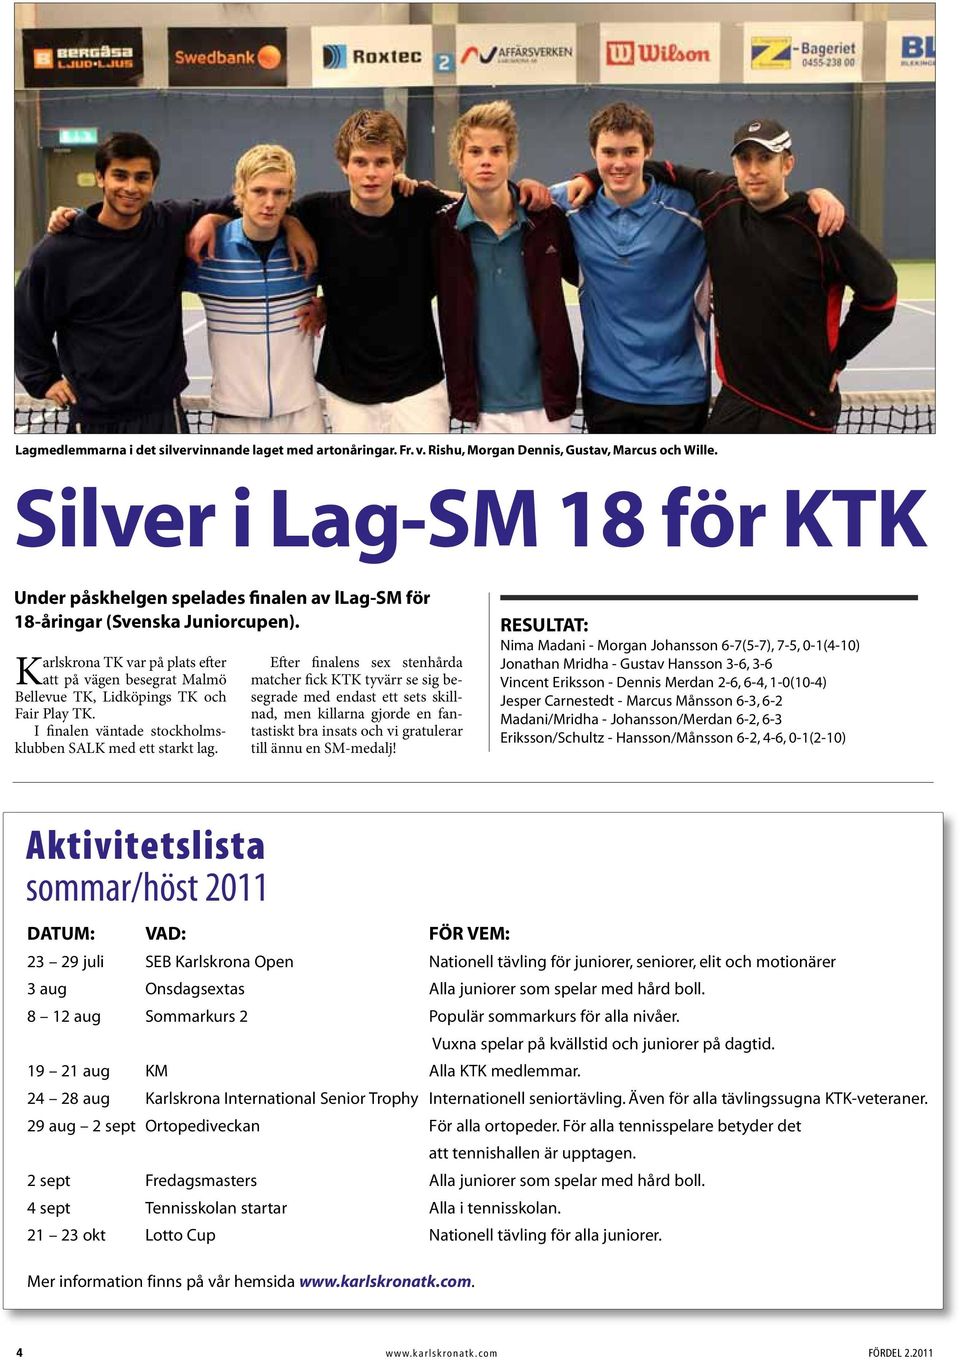 Karlskrona TK var på plats efter att på vägen besegrat Malmö Bellevue TK, Lidköpings TK och Fair Play TK. I finalen väntade stockholmsklubben SALK med ett starkt lag.